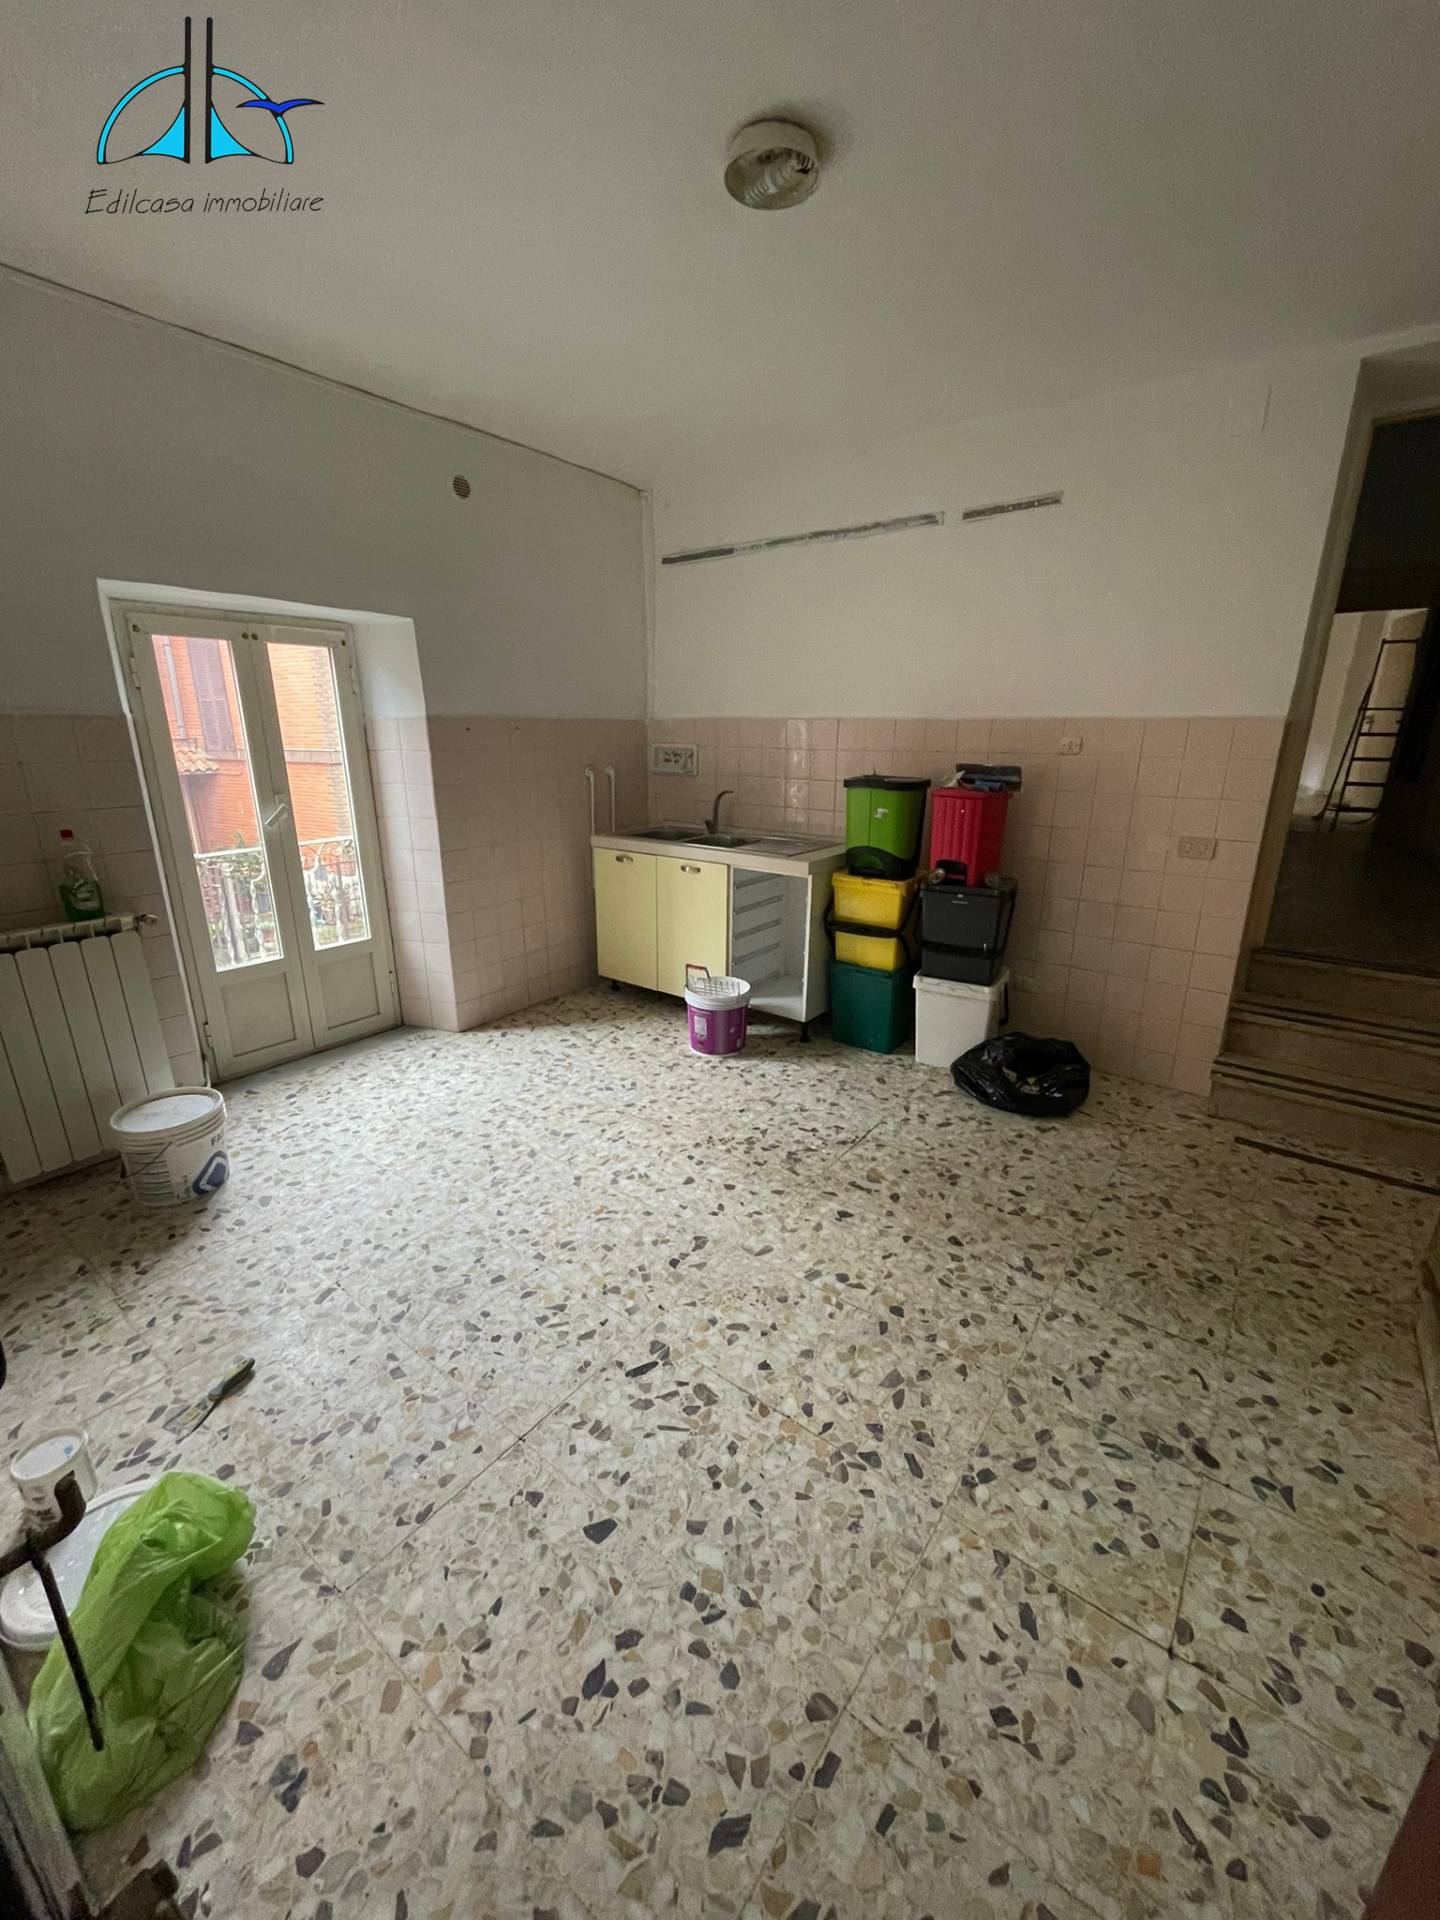 Appartamento in vendita a Montelibretti, 3 locali, prezzo € 45.000 | CambioCasa.it